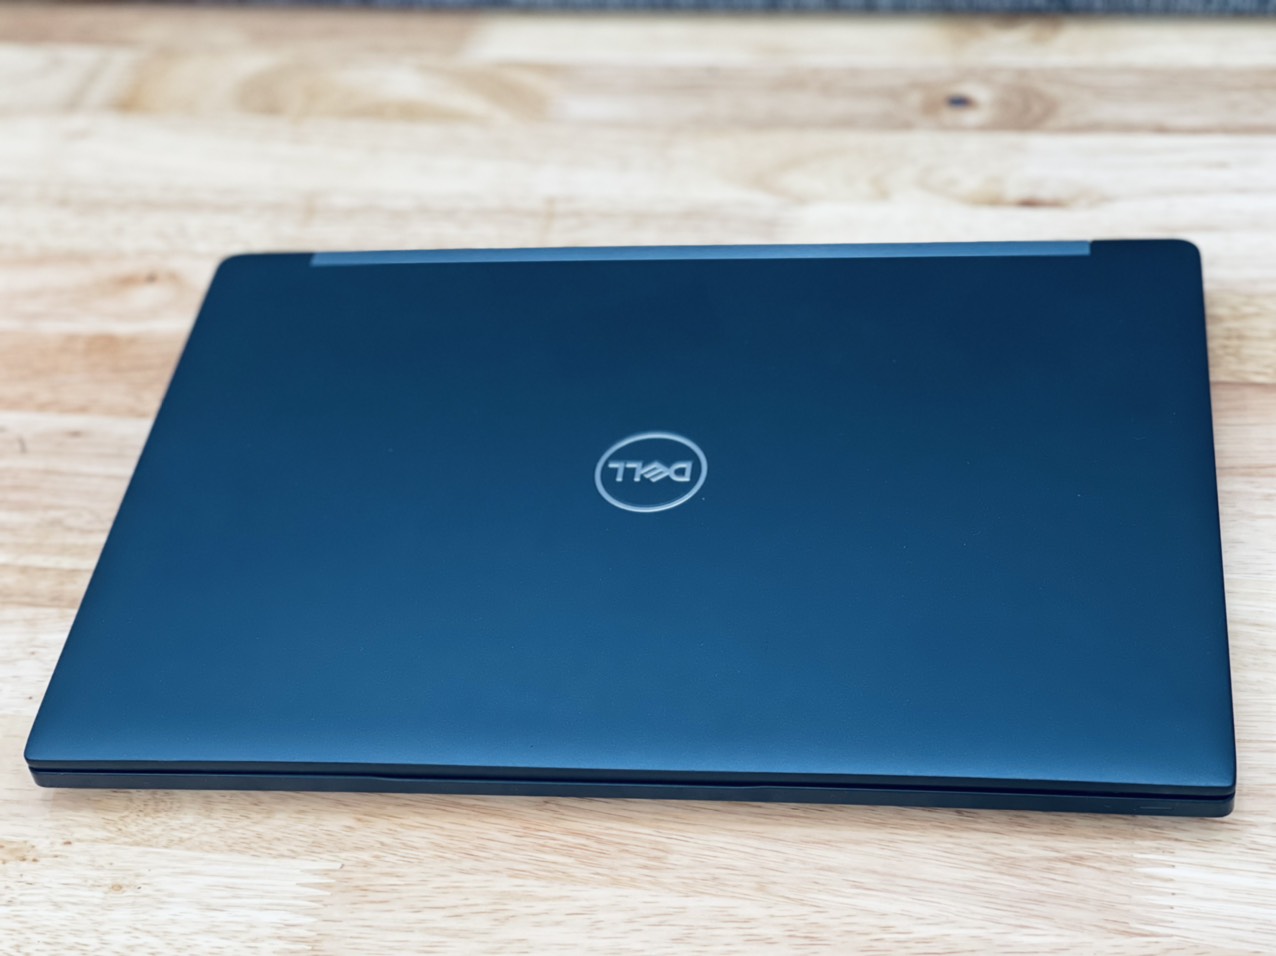 Laptop xách tay Dell E7470 giá rẻ